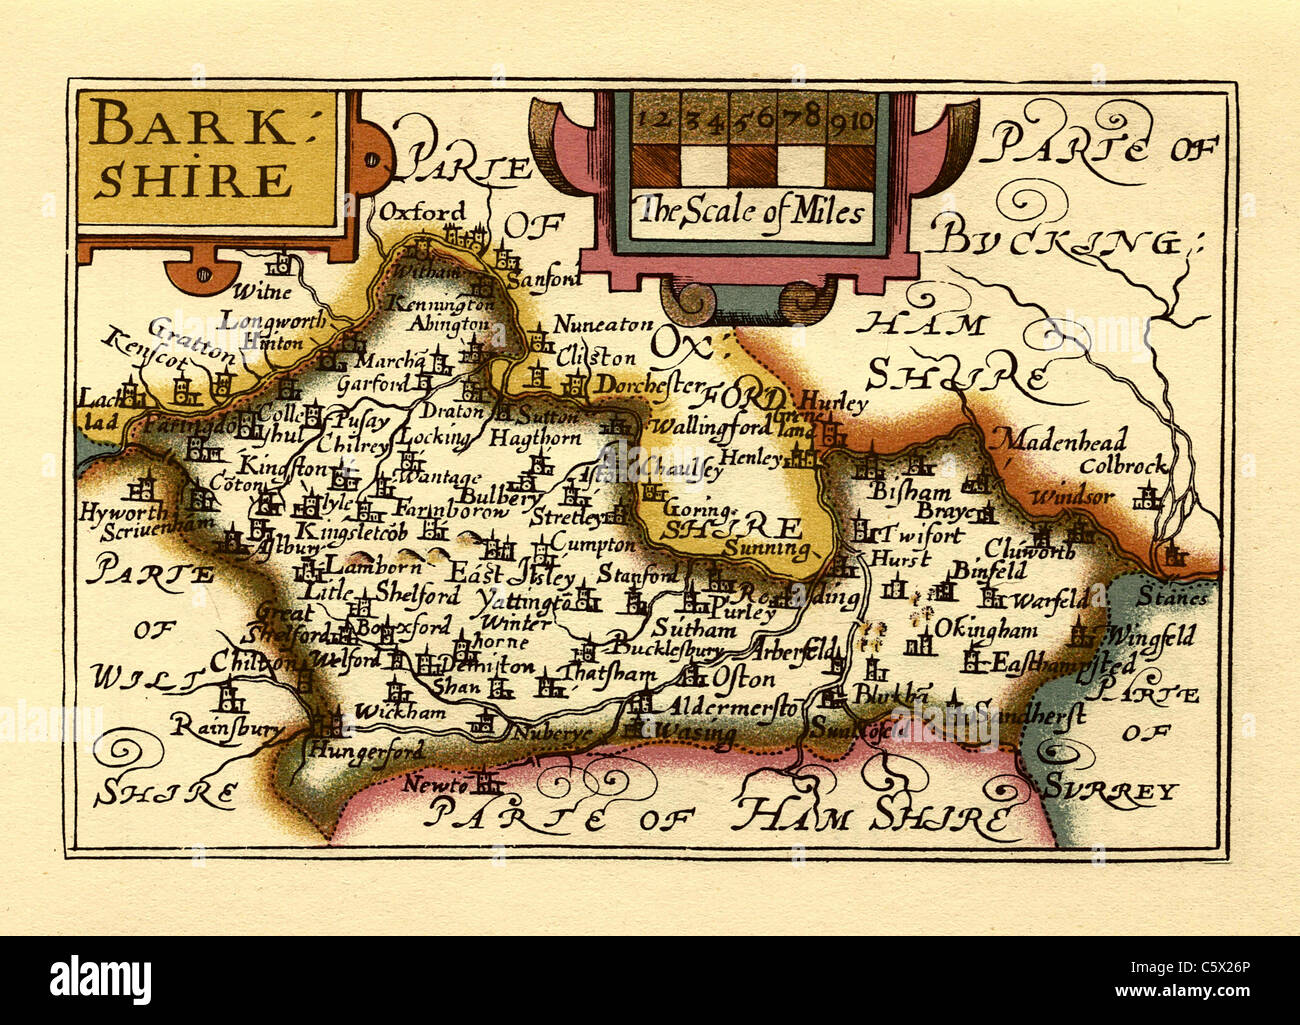 Berkshire (barkshire) - alte Englische Grafschaft Karte von John Speed, ca. 1625 Stockfoto